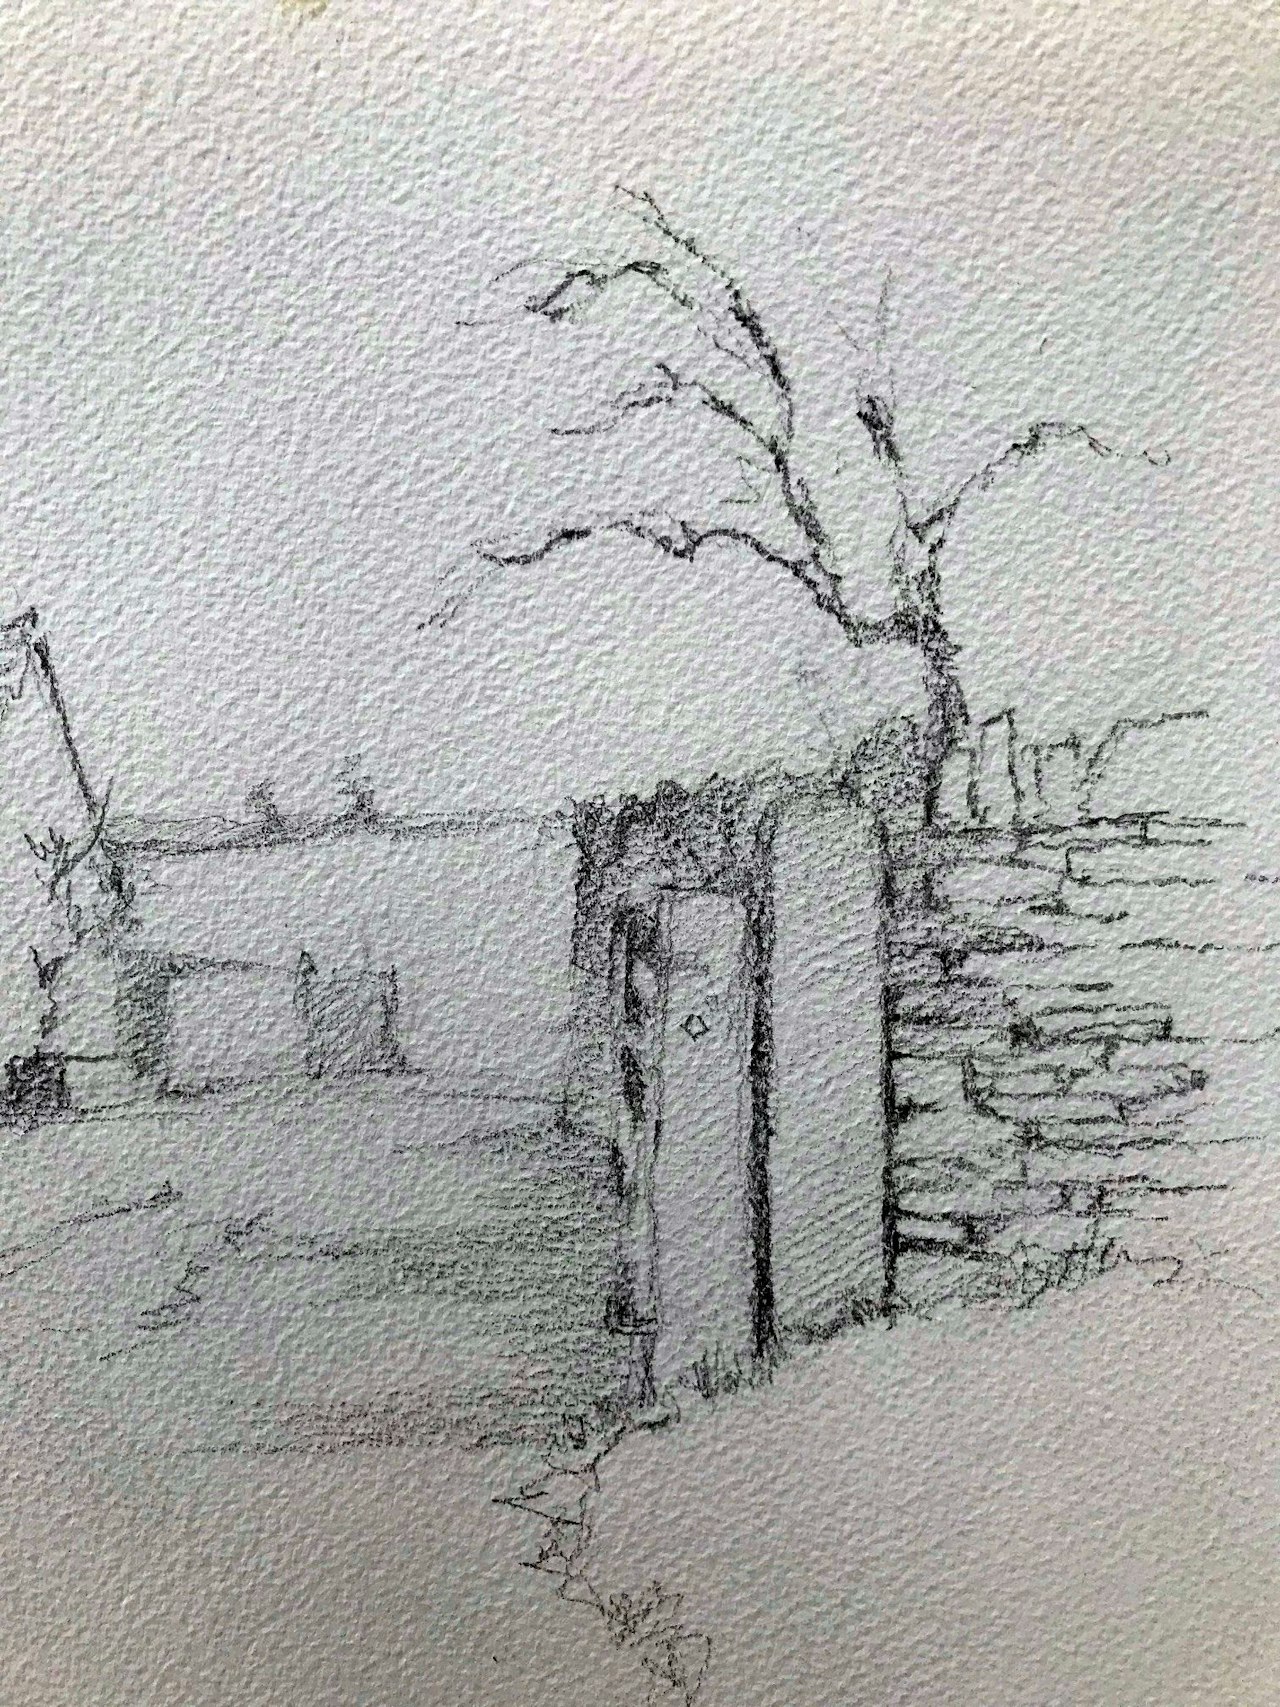 Lesson 4 gateway drawing detail